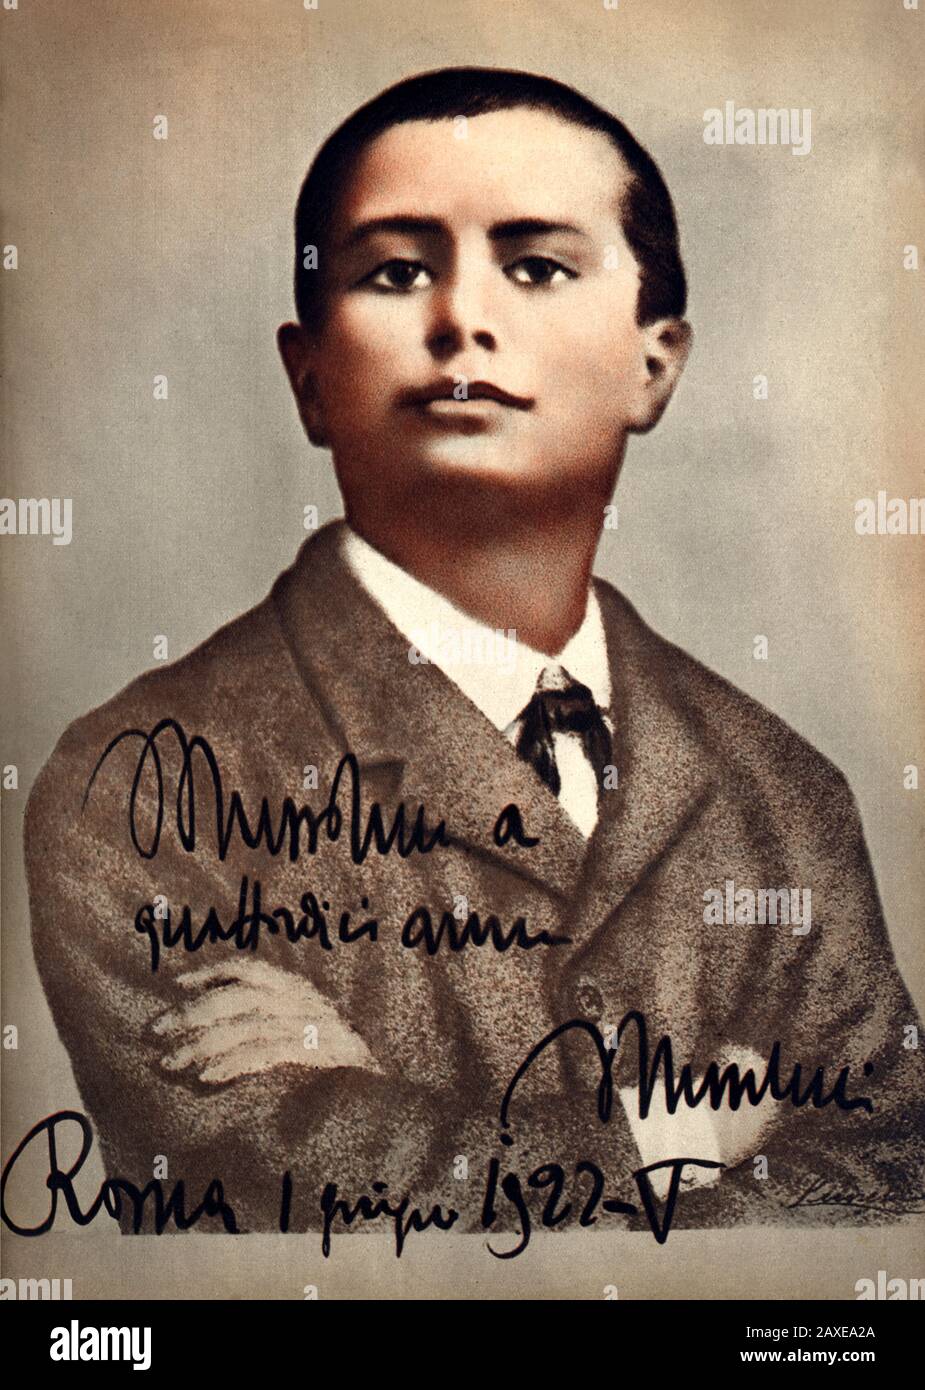 1897 , ITALY : The italian Fascist Duce BENITO MUSSOLINI ( Predappio, 29 july 1883 – Giulino di Mezzegra, 28 april 1945 ) when was aged 14 - ritratto - portrait  - POLITICA - POLITICO -  ITALIA - POLITIC - portrait - ITALY - FASCISMO - FASCISM - FASCISTA - ITALIA - autografo - autograph - signature - firma  - personality personalities when was young boys - CHILD - CHILDREN - CHILDHOOD - INFANZIA - personalità da giovane giovani bambini bambino ragazzo ragazzi ----  Archivio GBB Stock Photo